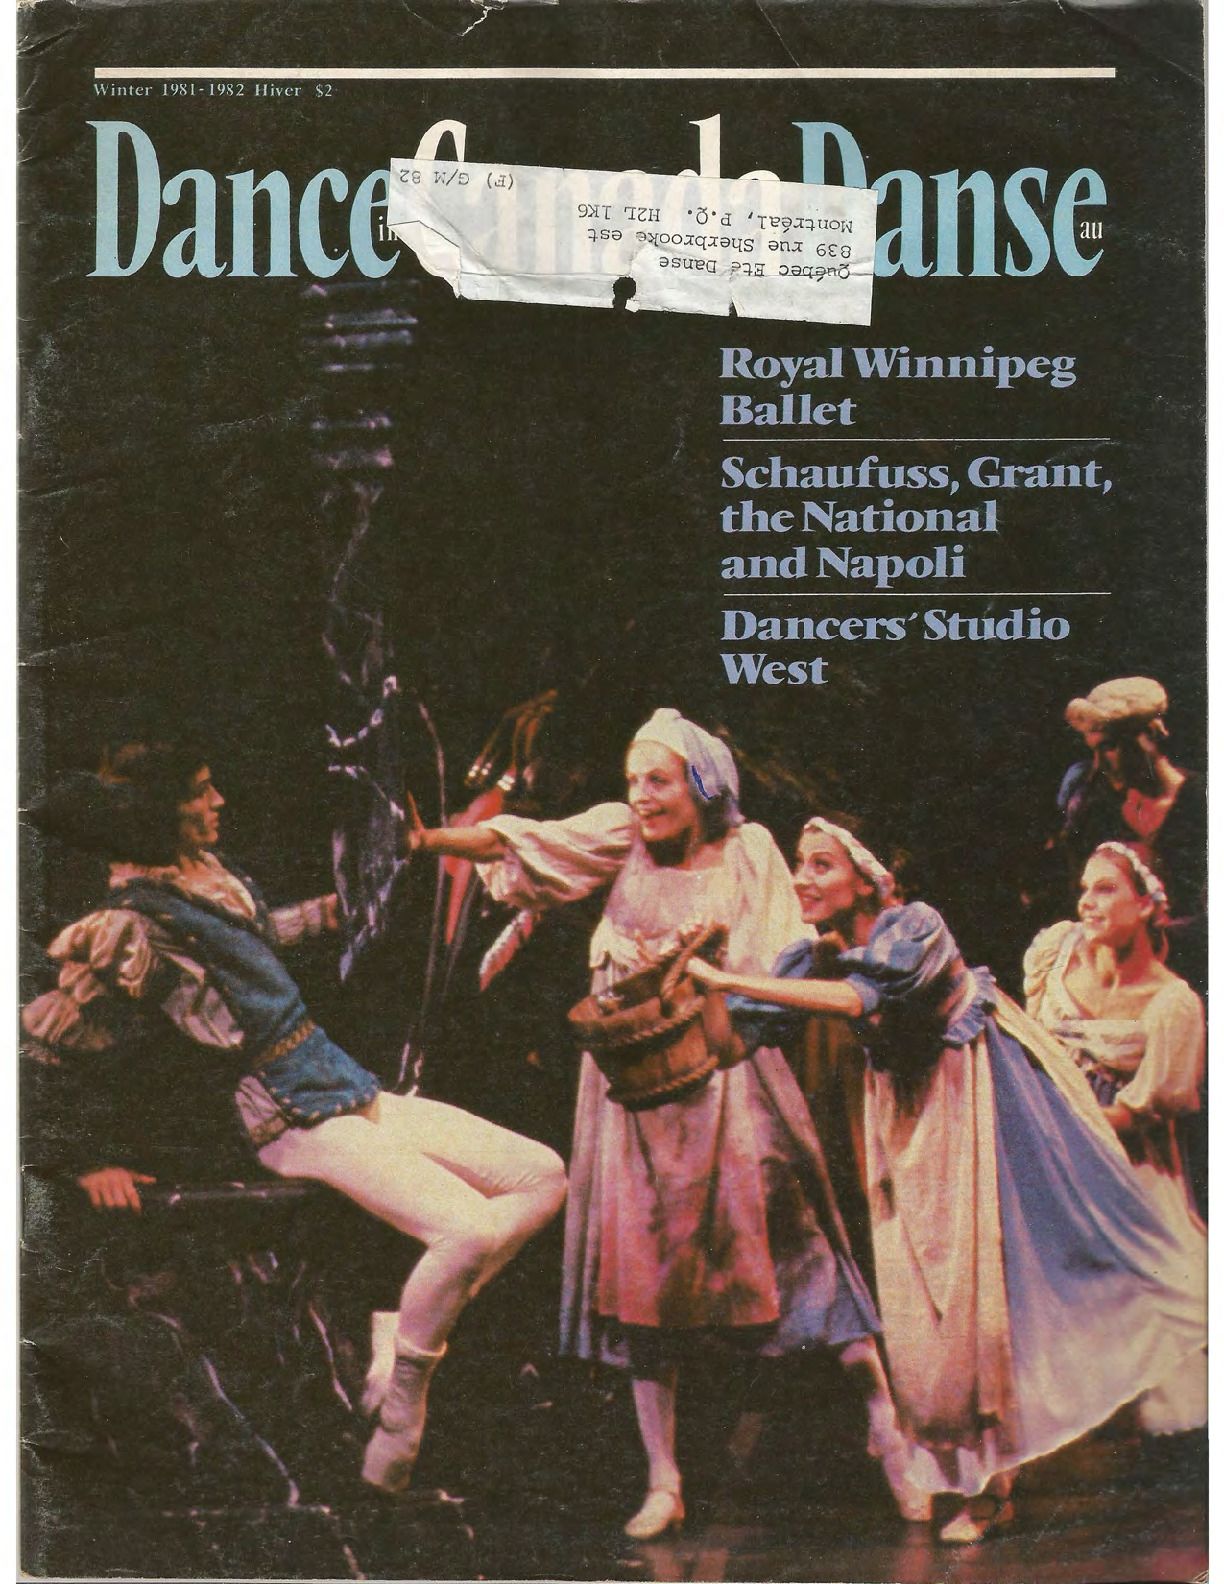 Dance in Canada Magazine No 30 Winter 1981-82 compressed.pdf